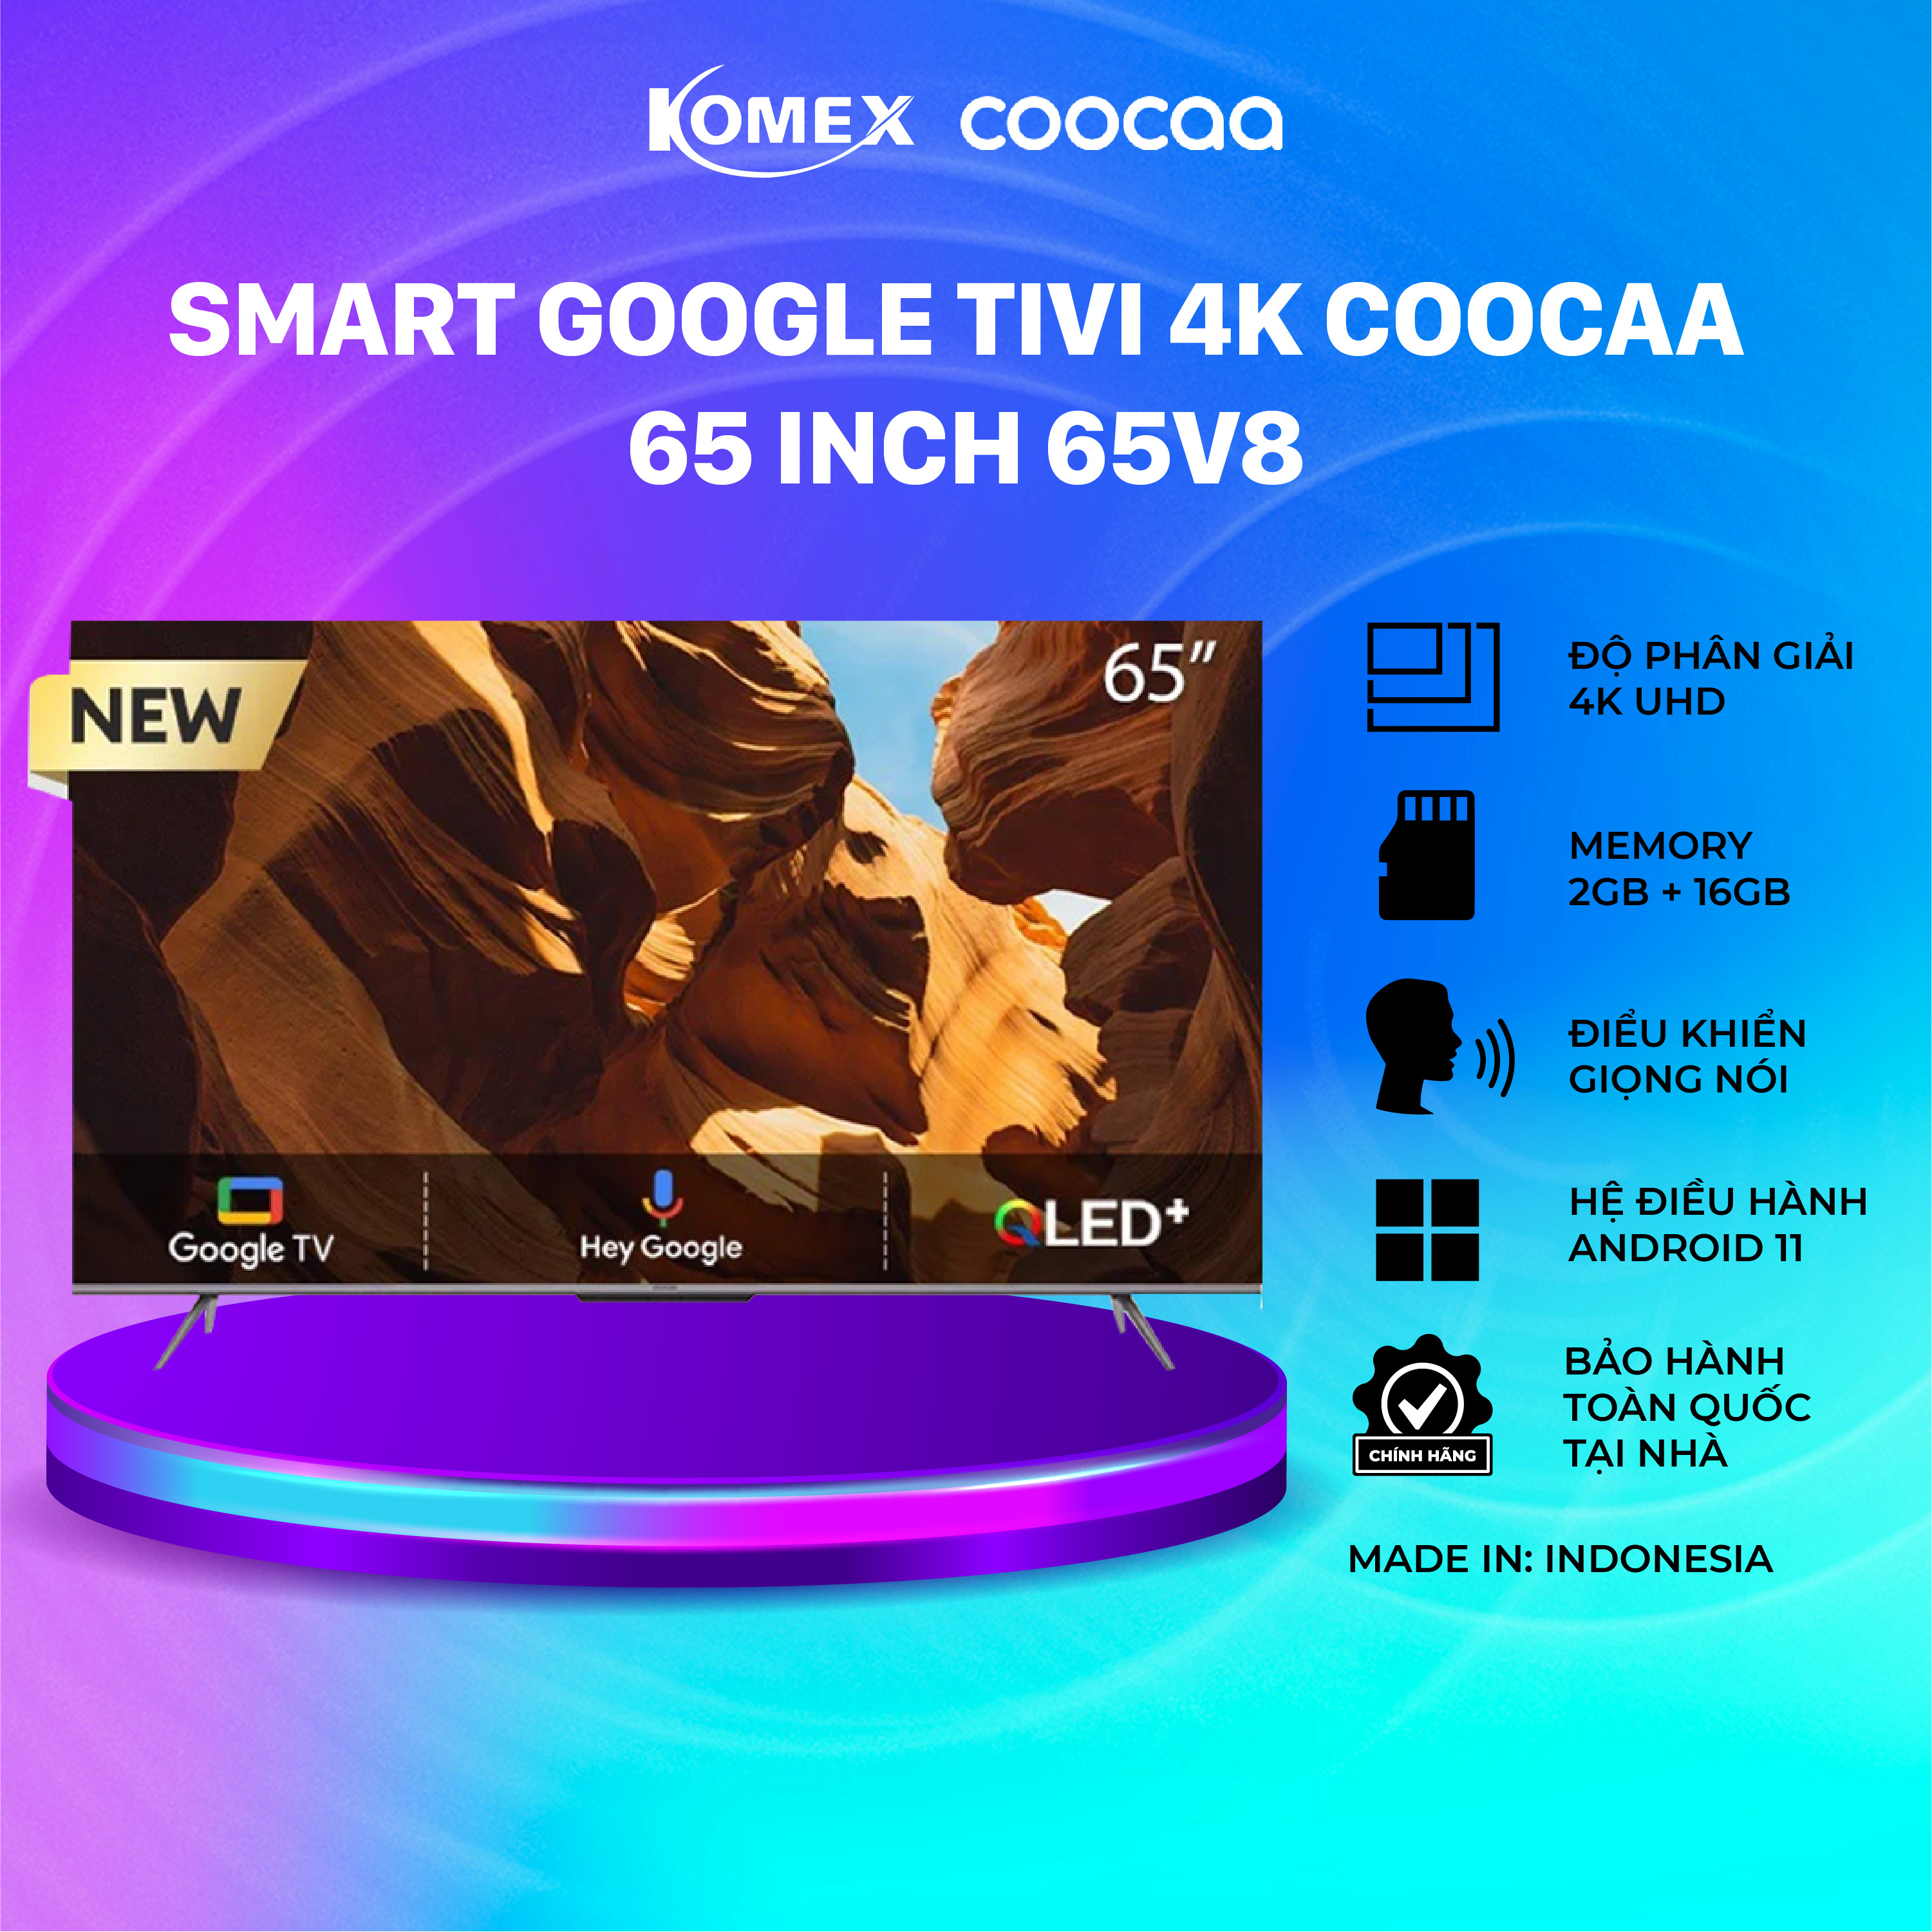 Tivi Coocaa 65 Inch 65V8 Smart tivi 4K UHD, Kết nối wifi, Điều khiển giọng nói, Đồng kiểm, Đổi trả 30 ngày Bảo hành 24 tháng - Komex